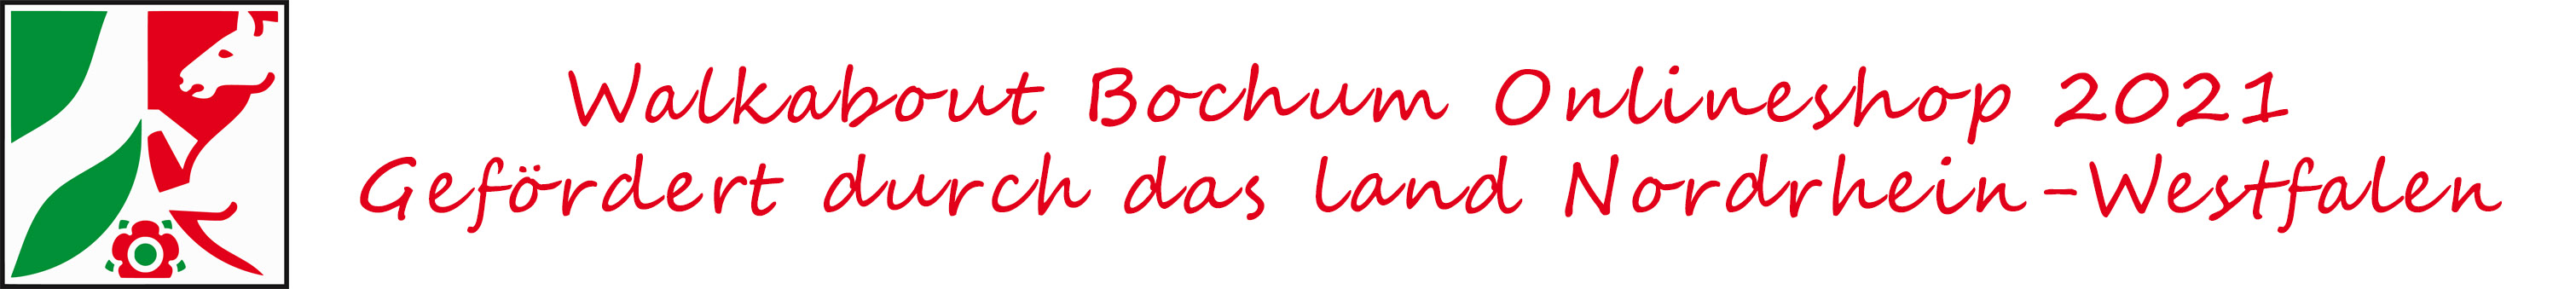 Walkabout Bochum Onlineshop gefördert durch das Land Nordrhein-Westfalen.